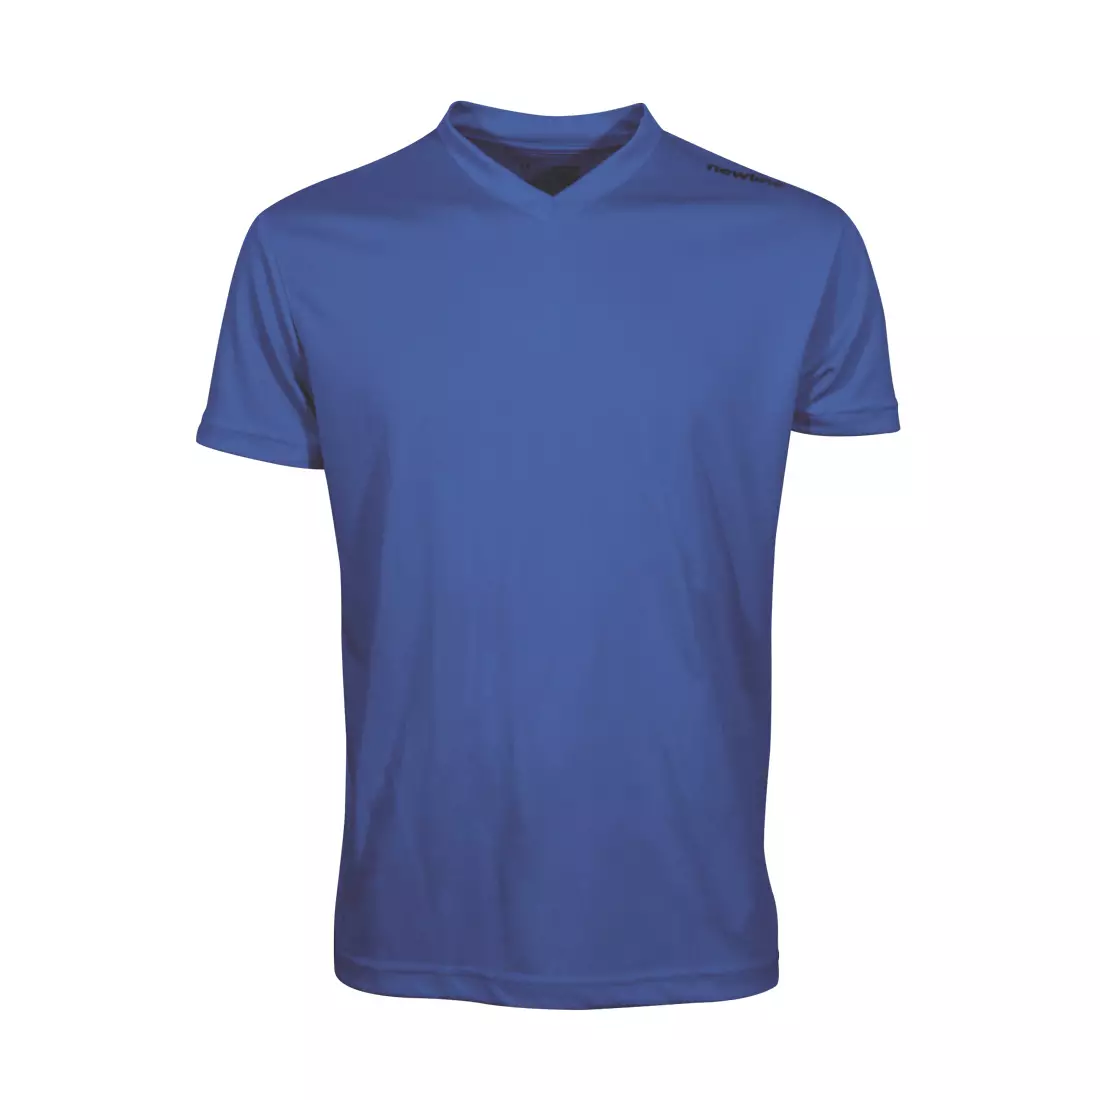 NEWLINE BASE COOL T-SHIRT - pánské běžecké tričko 14614-11